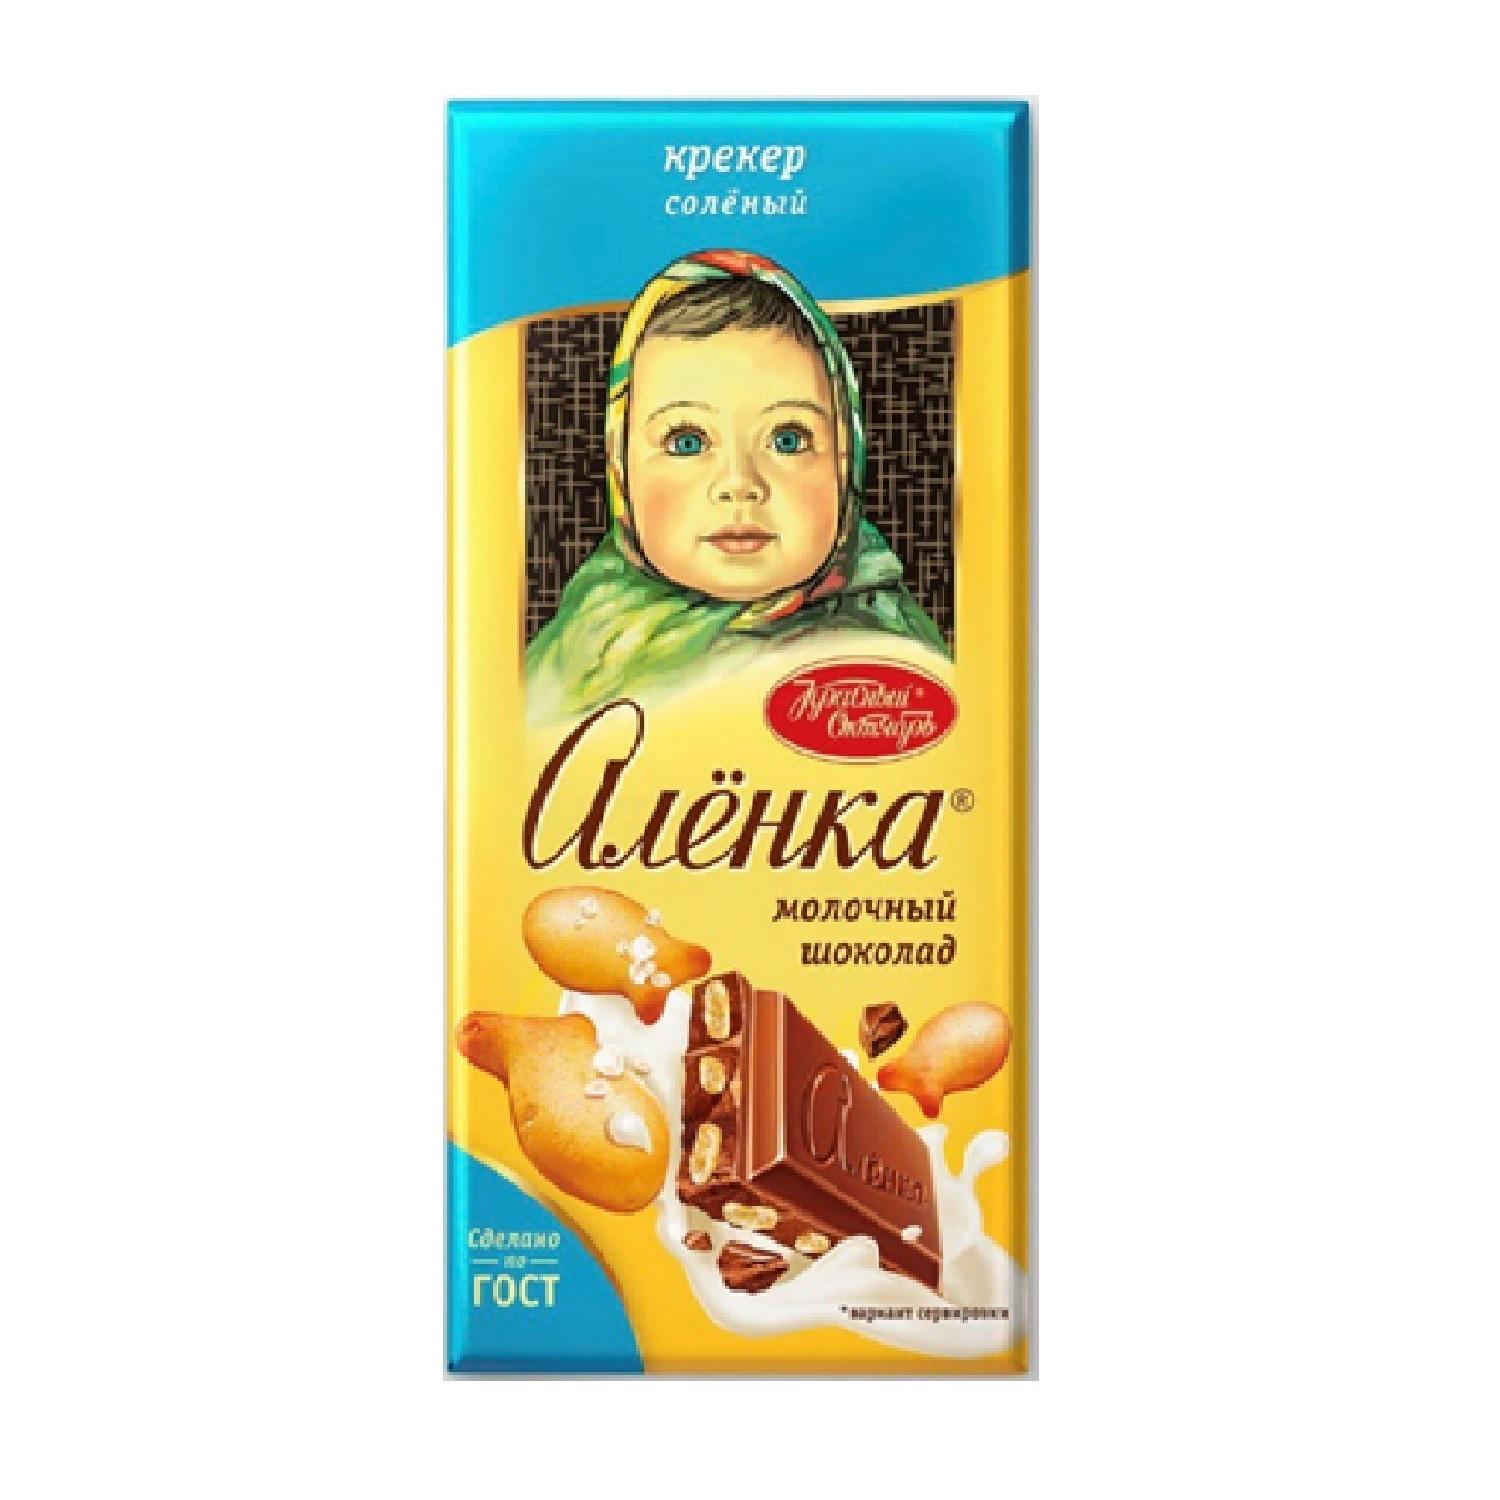 Шоколад Алёнка Соленый крекер 85 гр., обертка